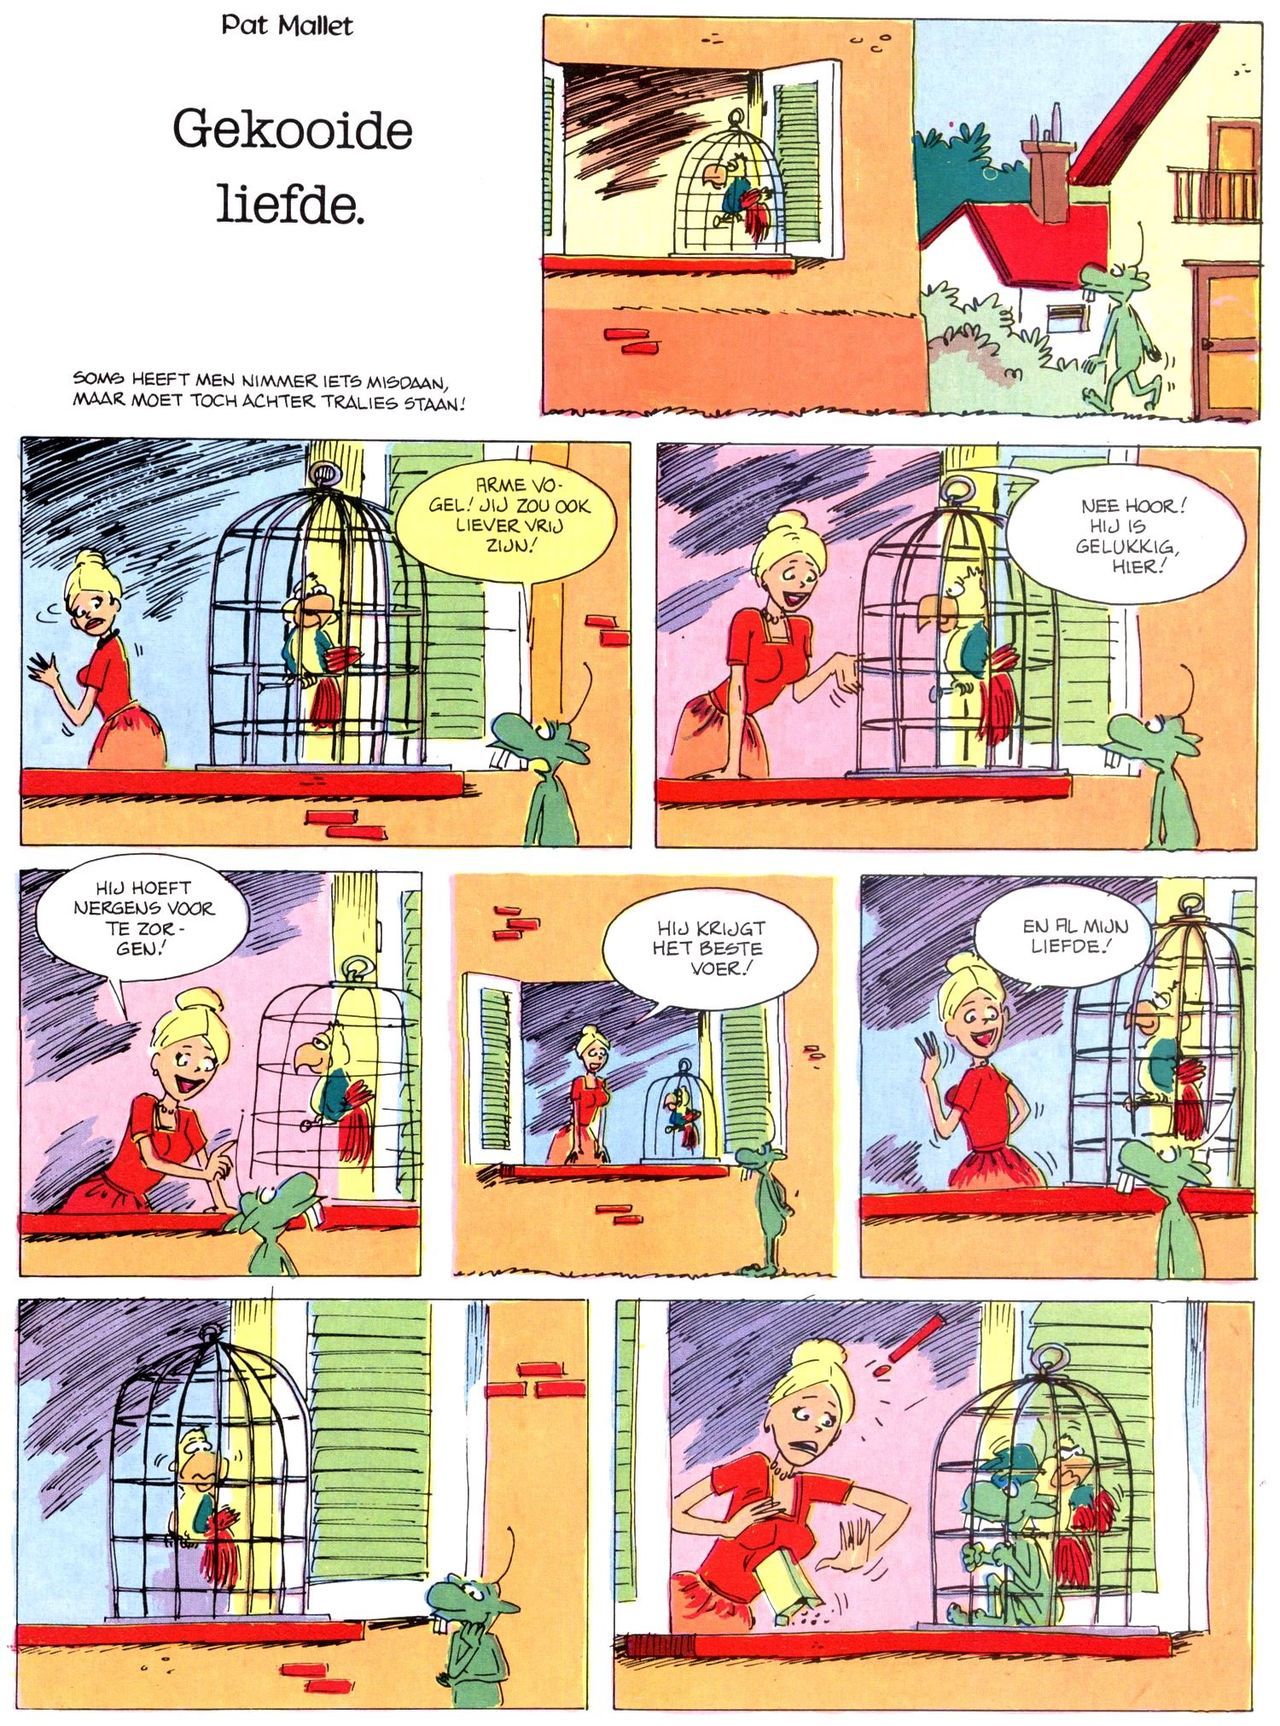 Het Is Groen En Het.. - 02 - Verboden Op Het Gras Te Lopen (Dutch) Een oude humoristische serie van Pat Mallet 45